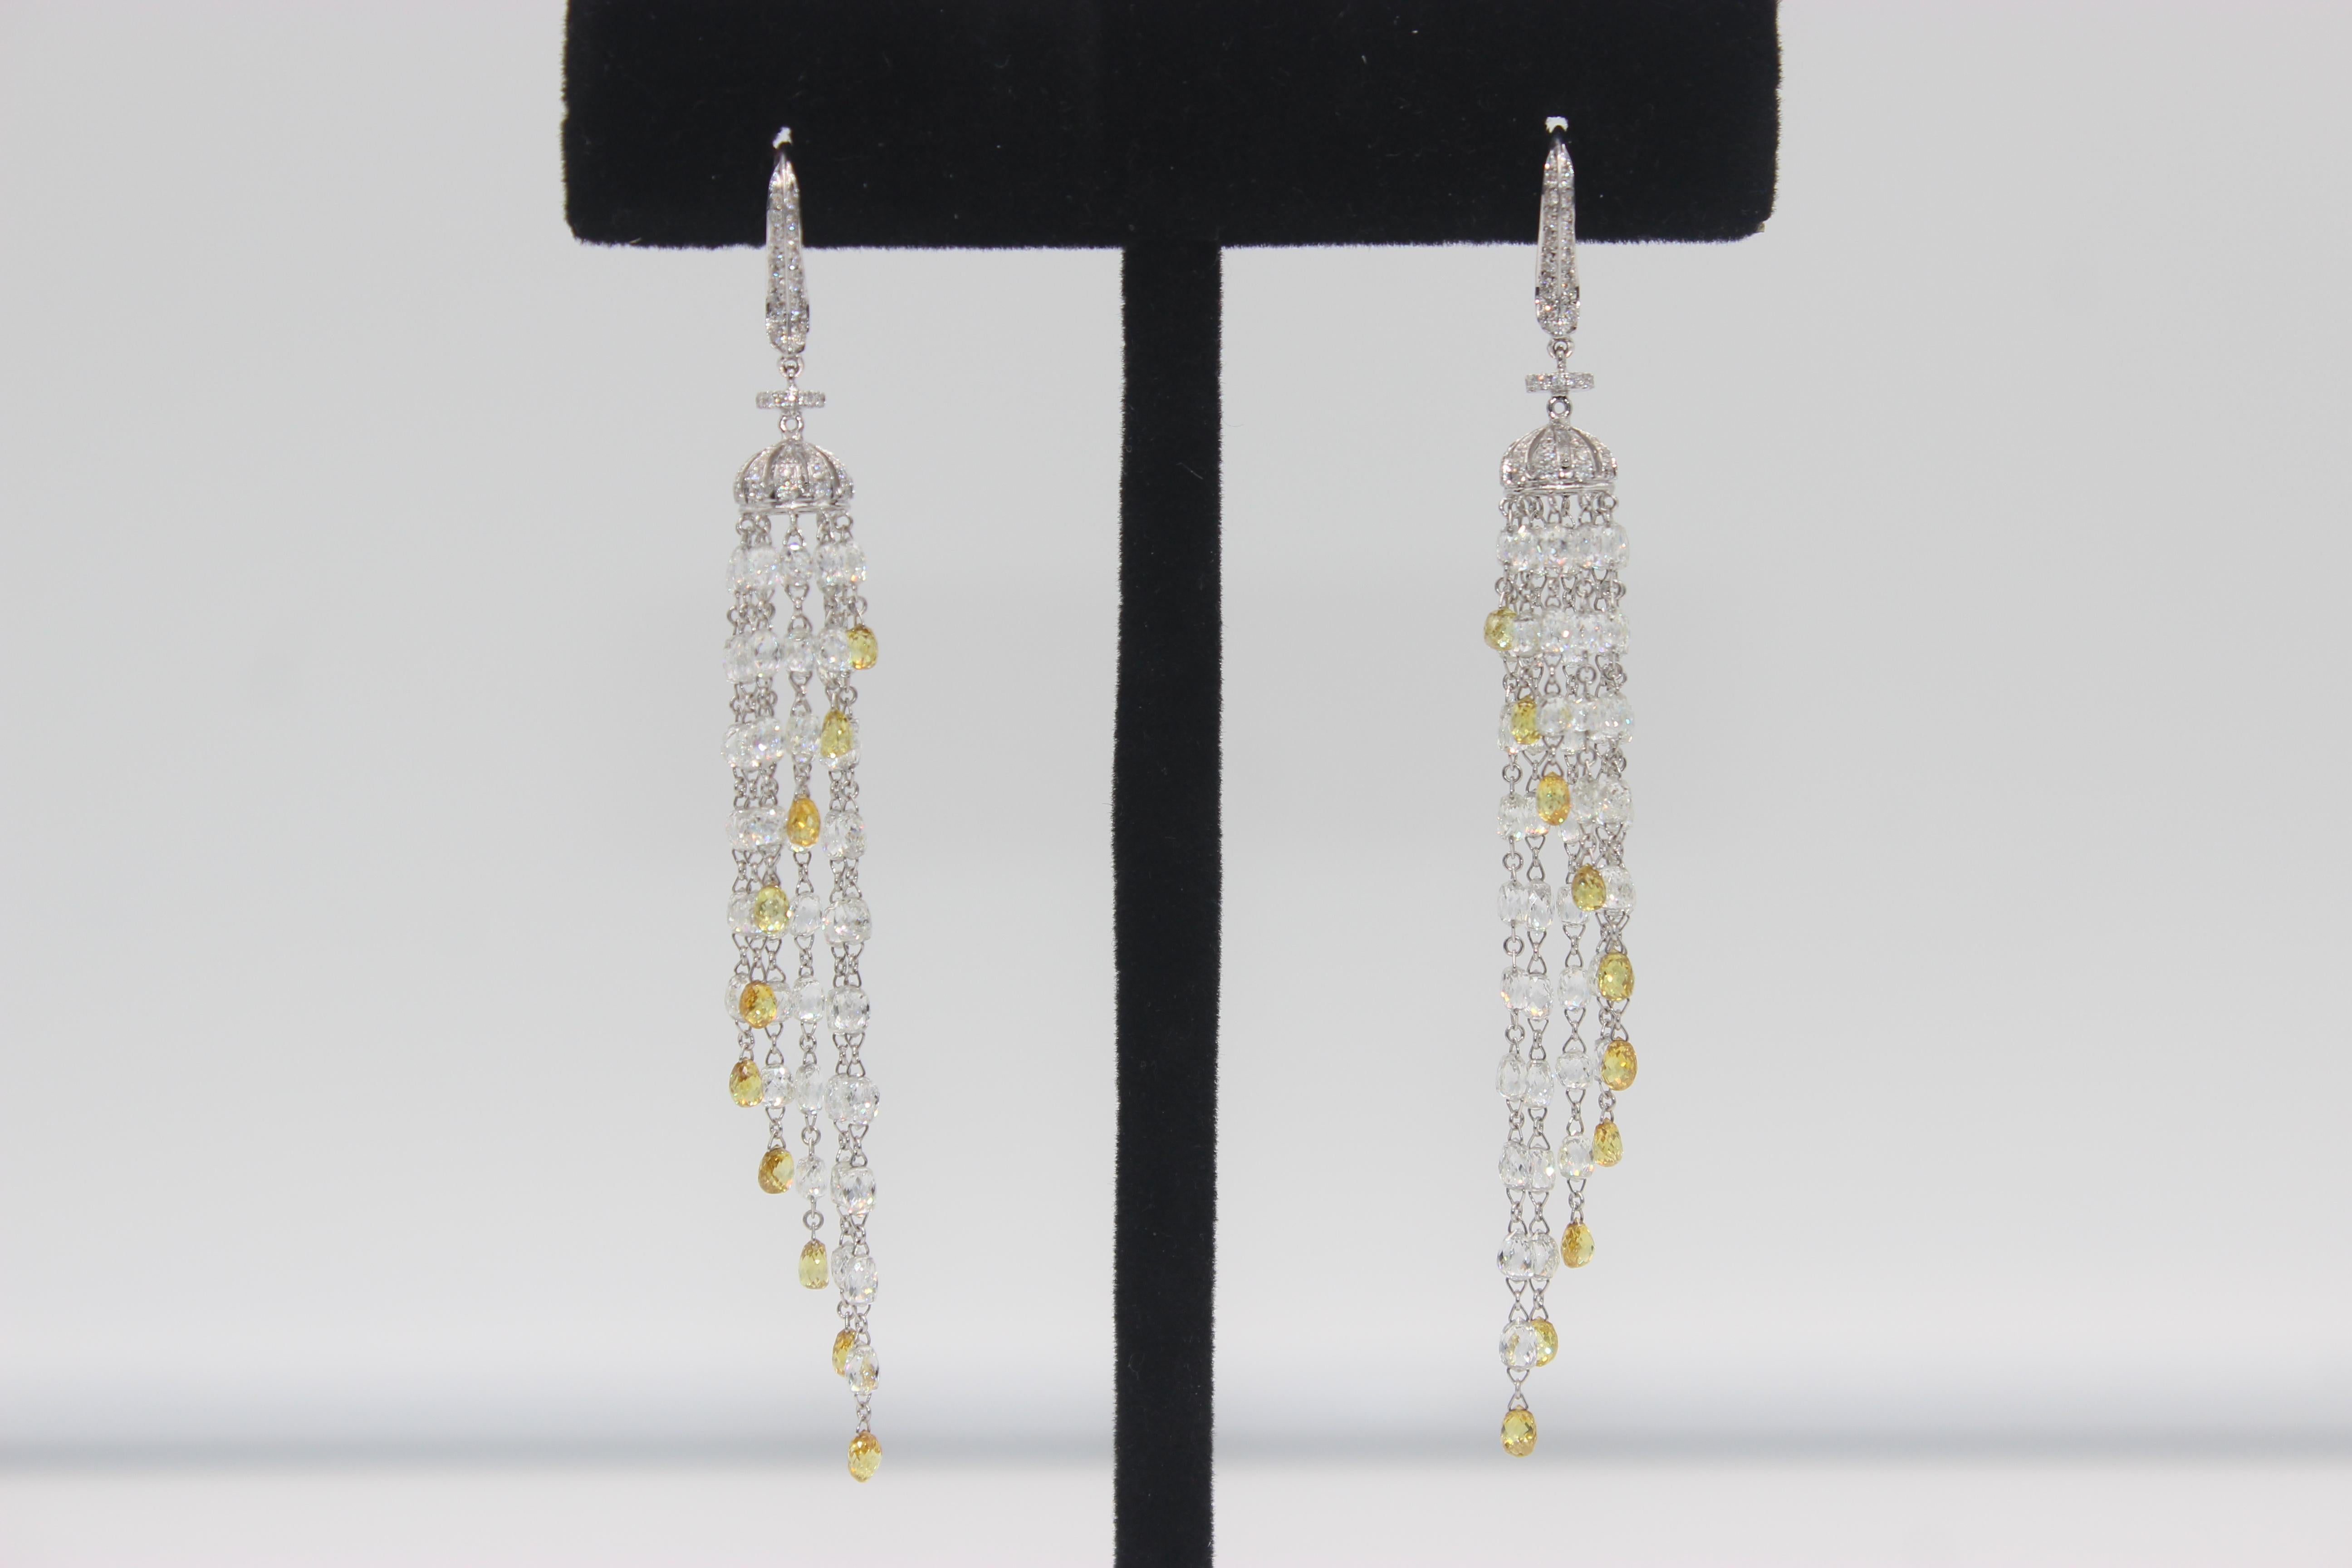 PANIM - Boucles d'oreilles pendantes en or blanc 18 carats avec briolette en diamant 23,18 carats

Faisant partie de notre collection de pompons, ces magnifiques boucles d'oreilles sont ornées de briolettes de diamants et de diamants ronds